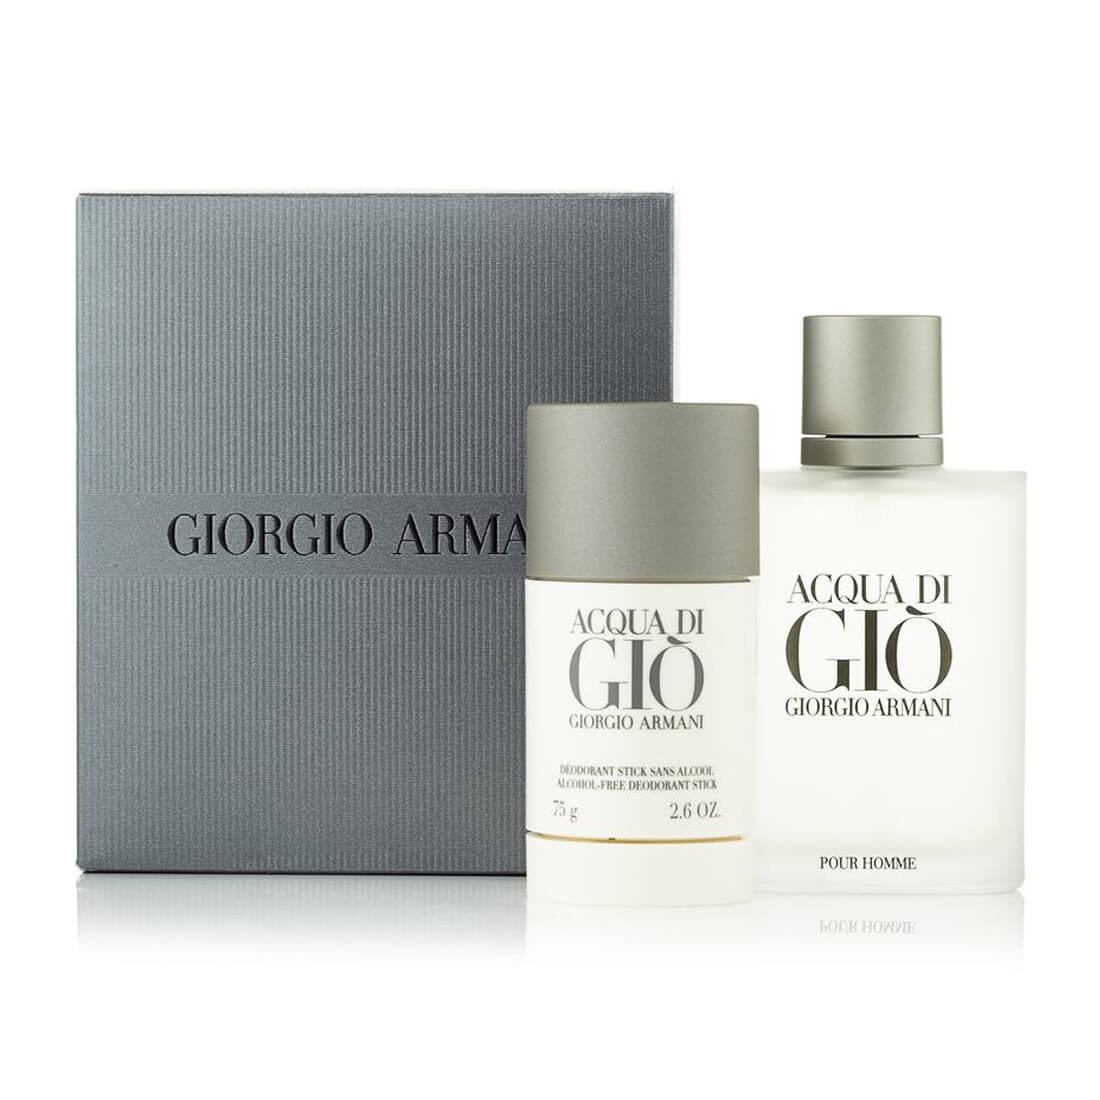 Giorgio Armani Acqua Di Gio Gift Set Eau De Toilette Spray 100ml + Alcohol-Free Deodorant Stick 75ml